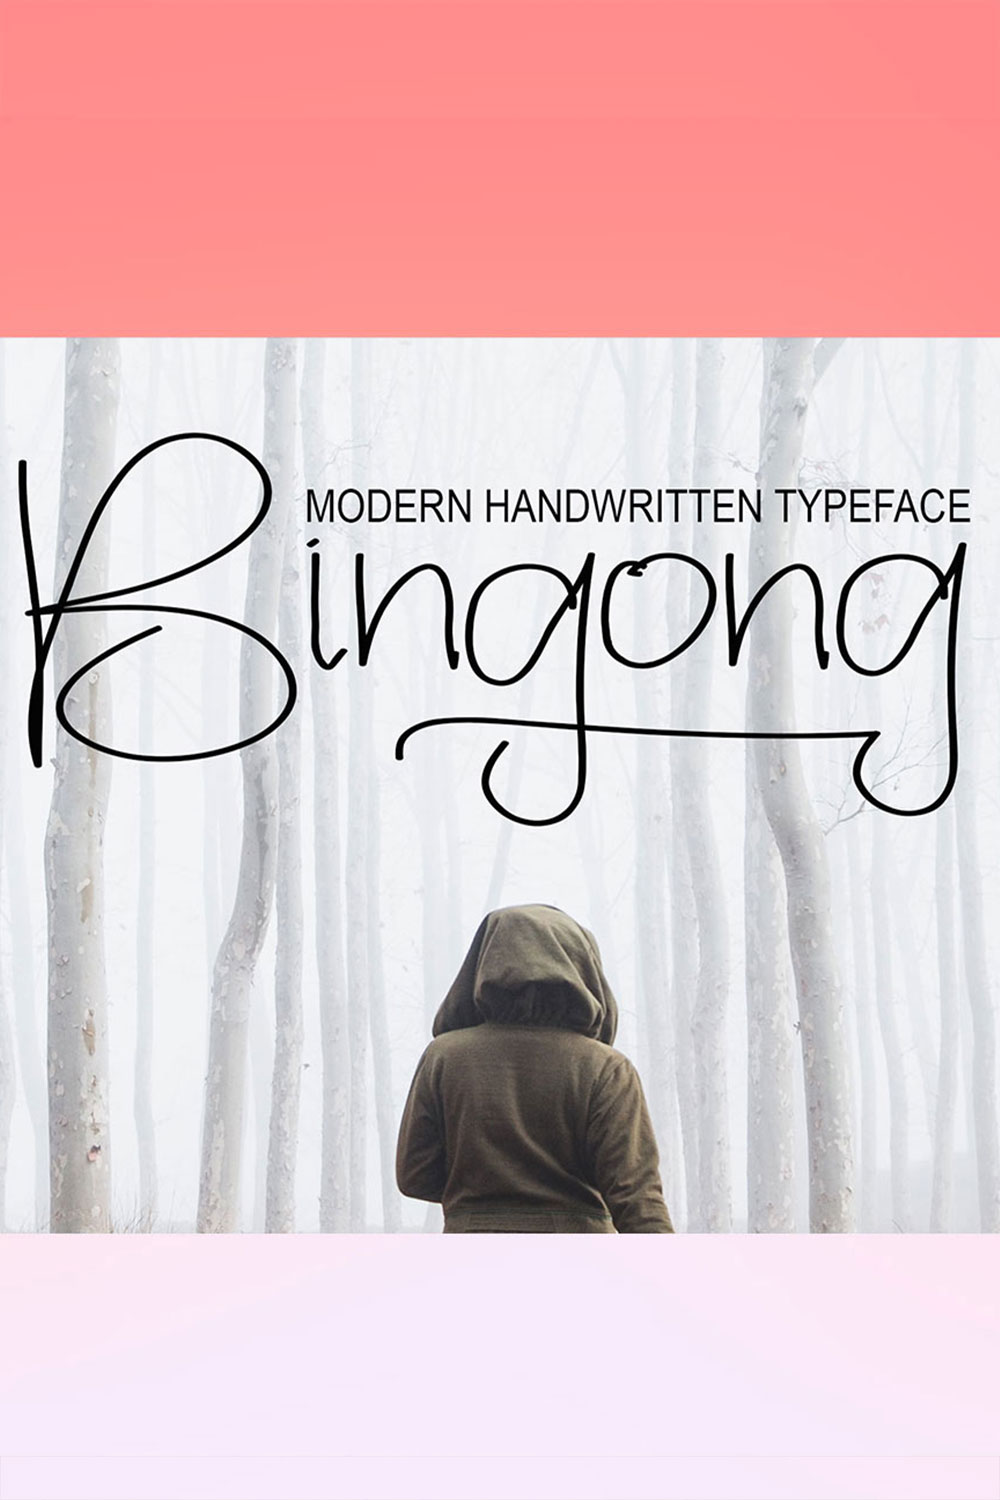 Bingong Handwritten Font Pinterest image.